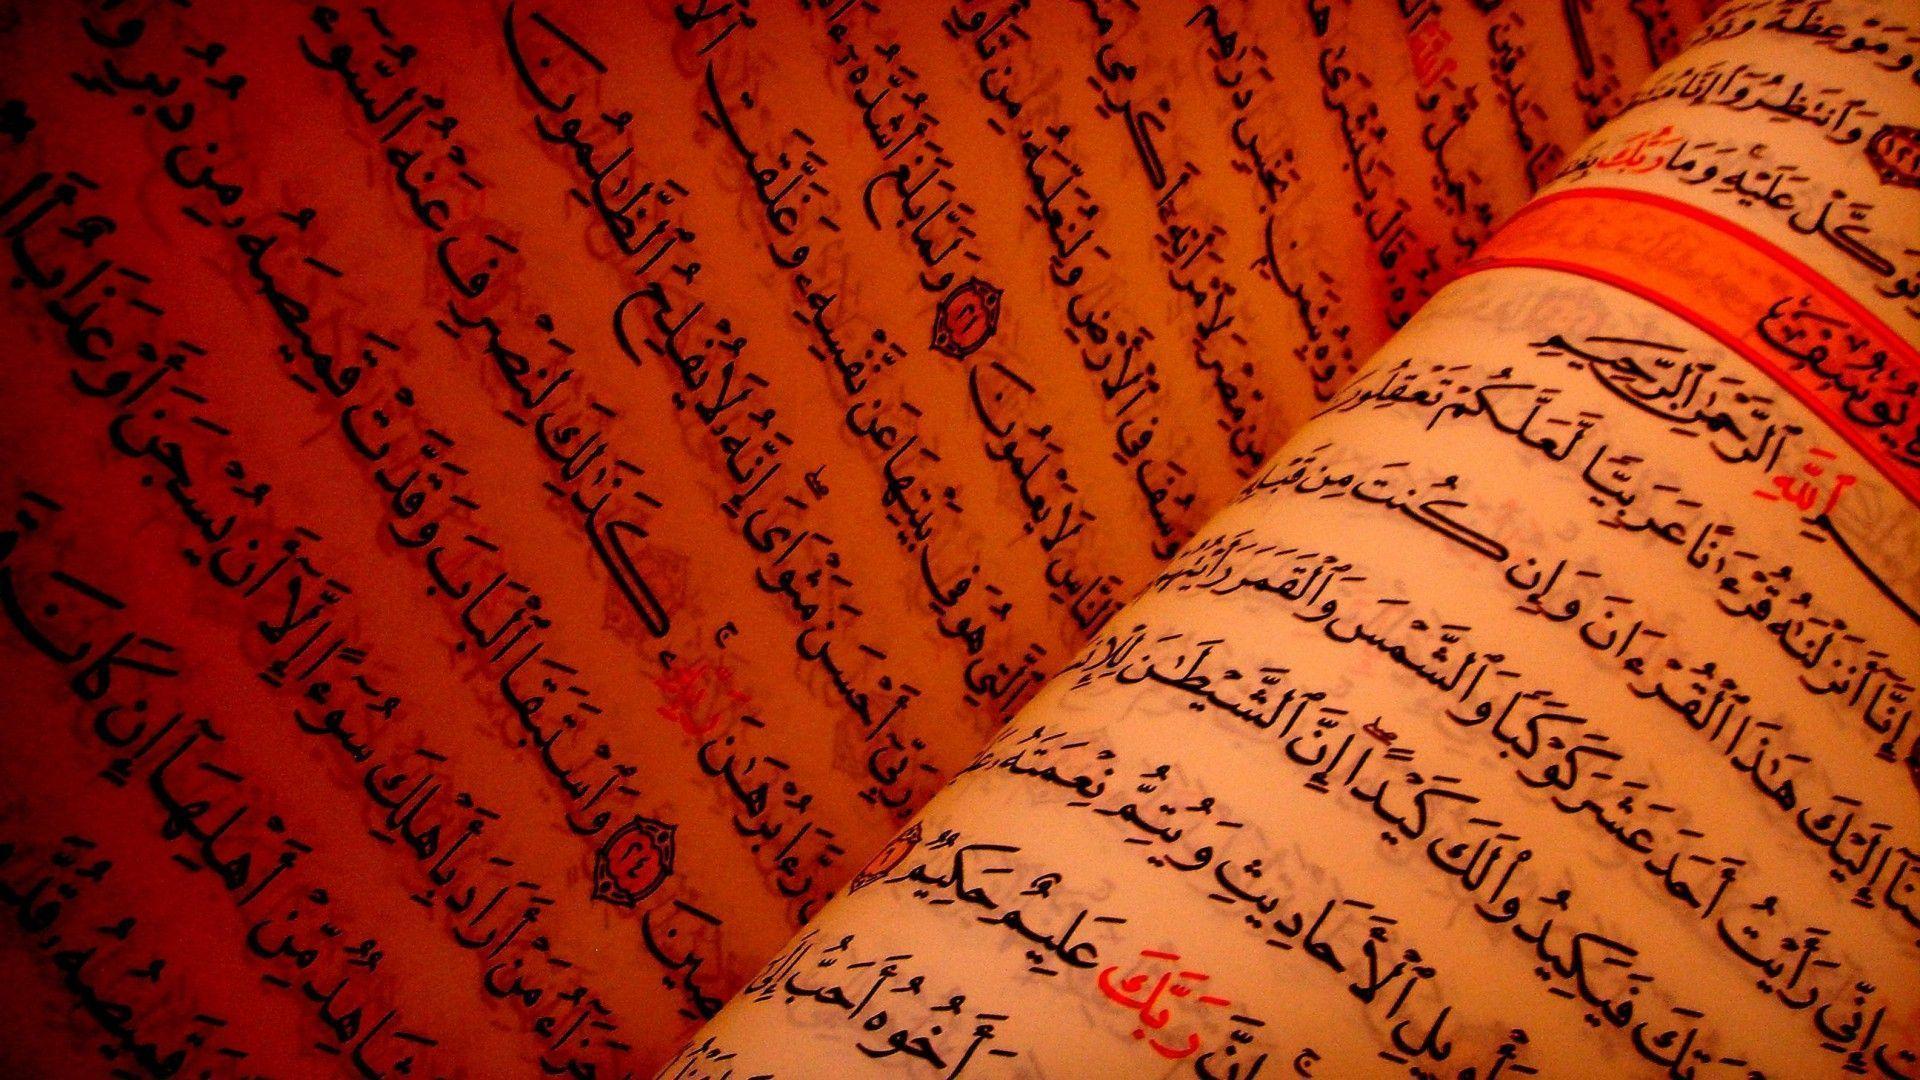 Quran Text HD Desktop Wallpaper. High Quality Wallpaper